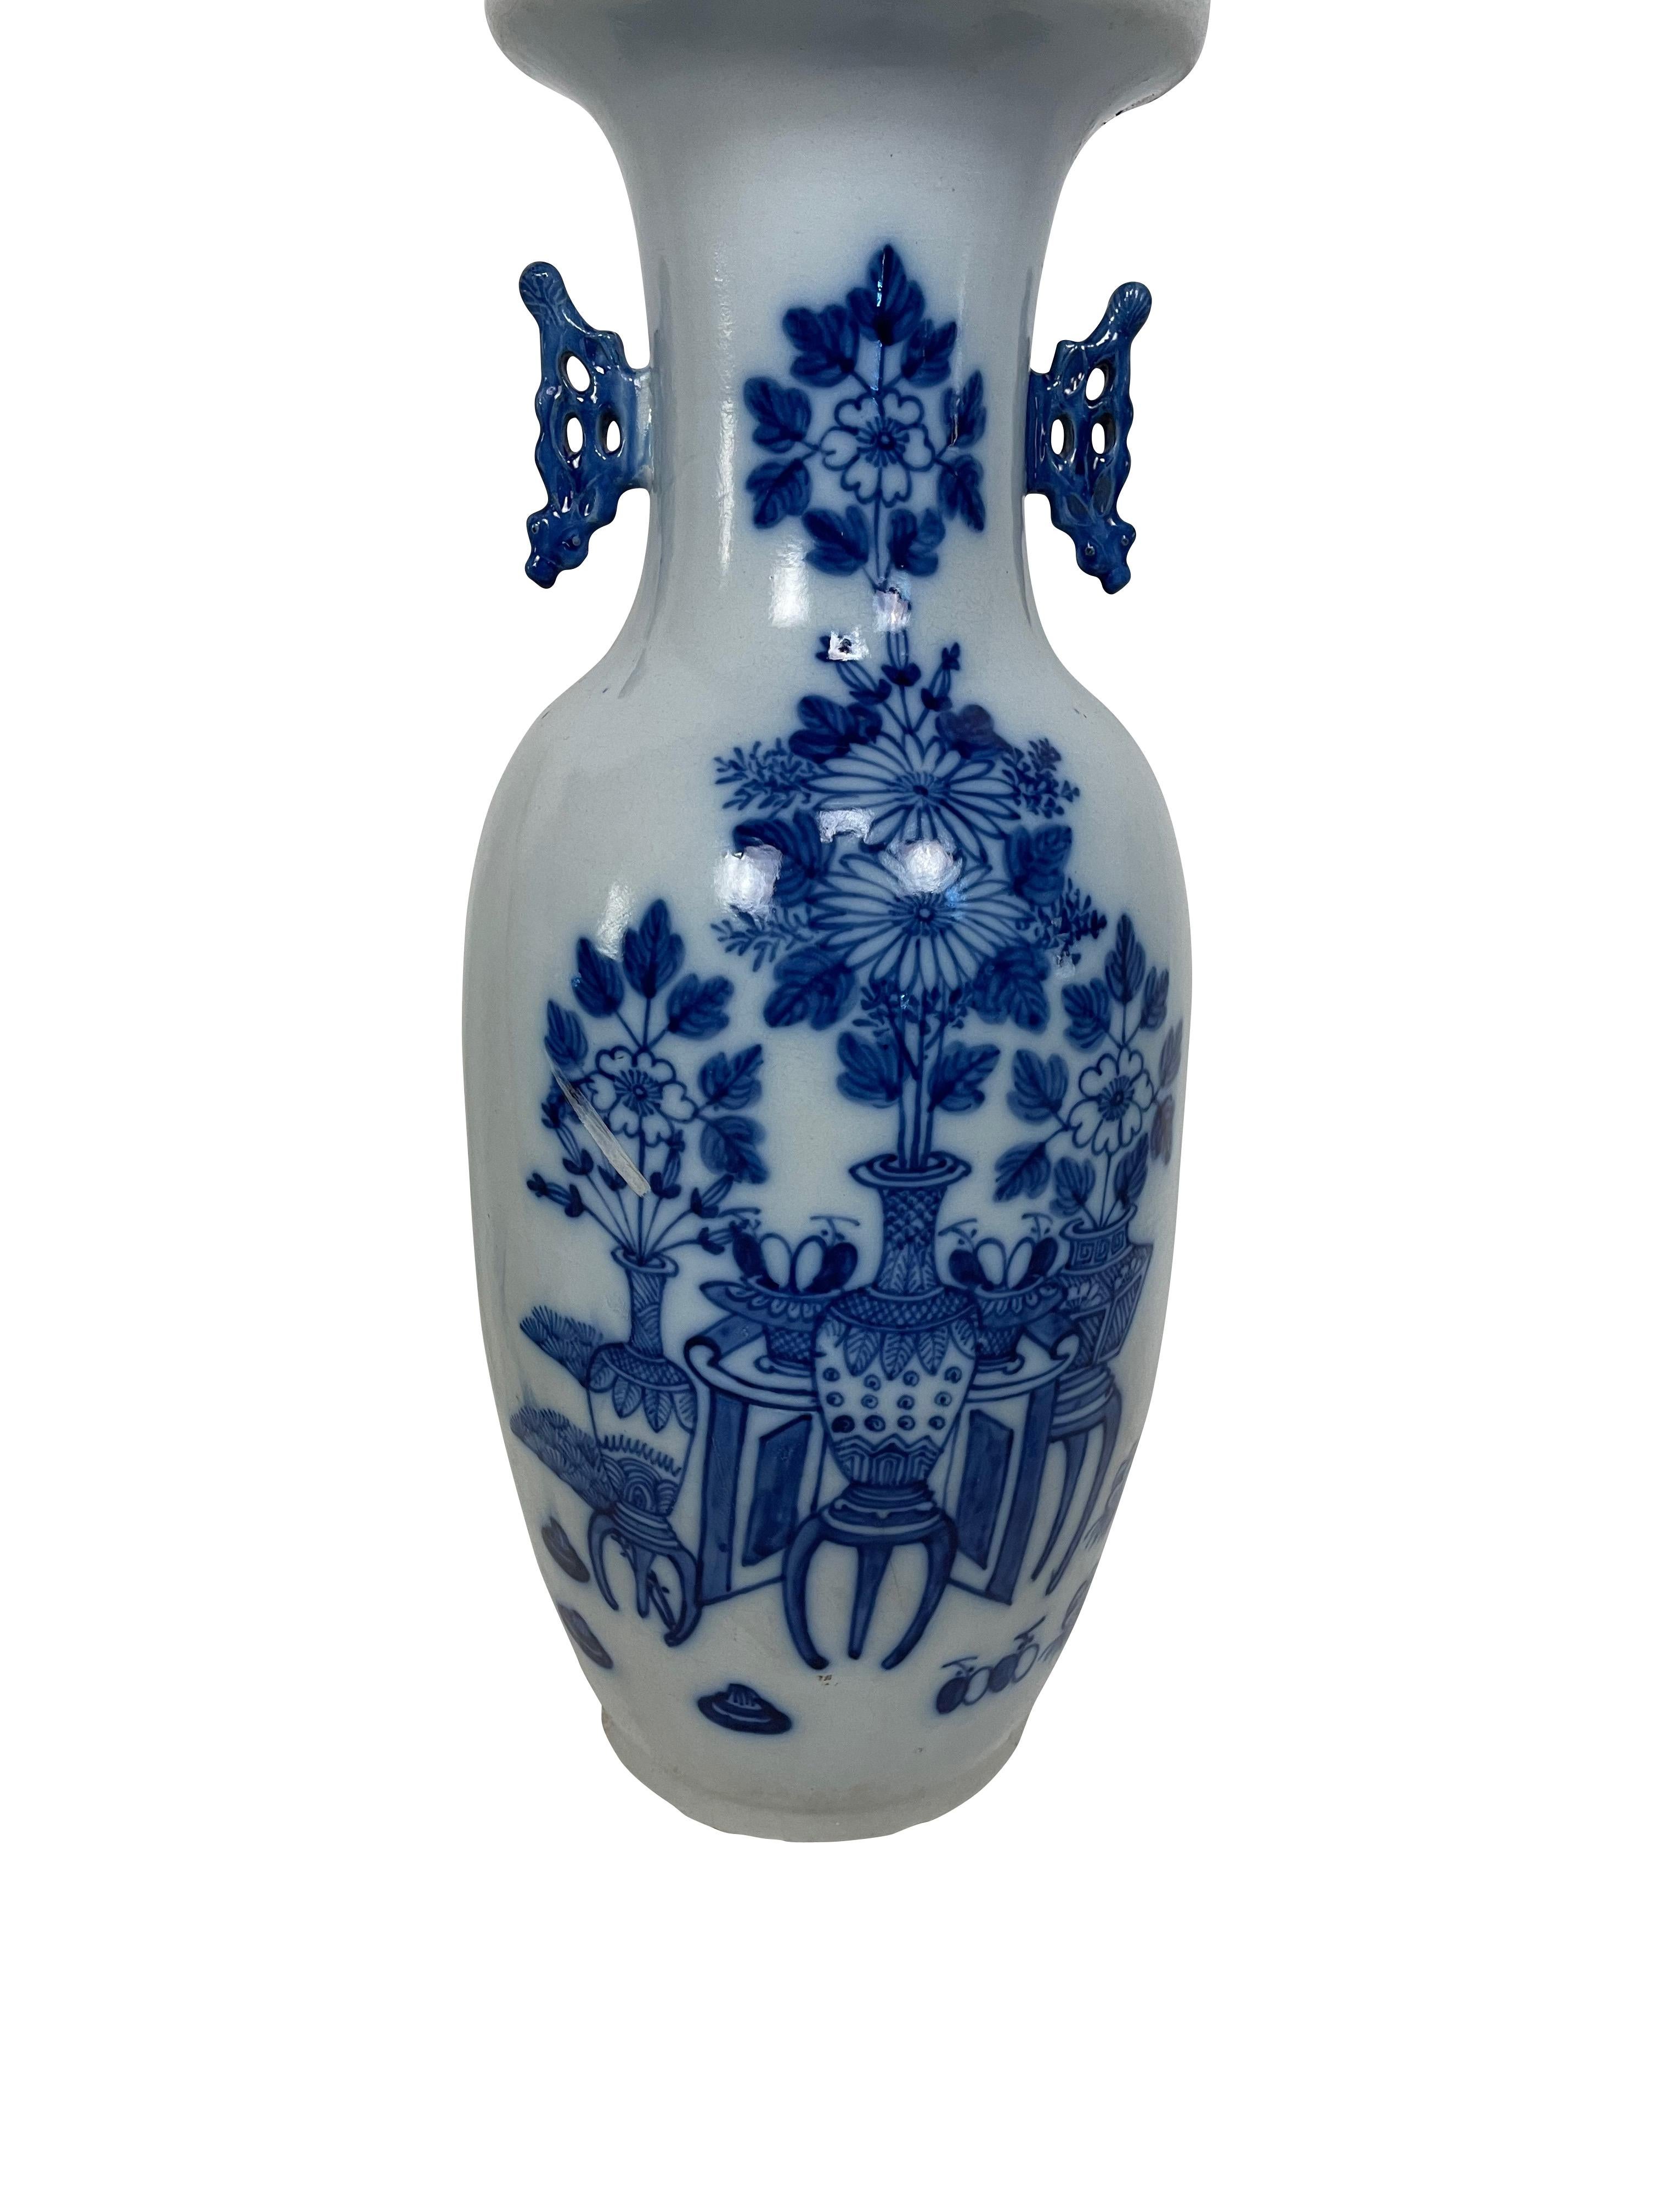 Eine feine antike chinesische Balustervase aus dem 19. Jahrhundert, verziert mit verschiedenen Blumen und Objekten in Flachrelief und kobaltblauer Unterglasur auf weiß glasiertem Grund. Die Vase hat geformte, stilisierte kobaltblaue Henkel zu beiden